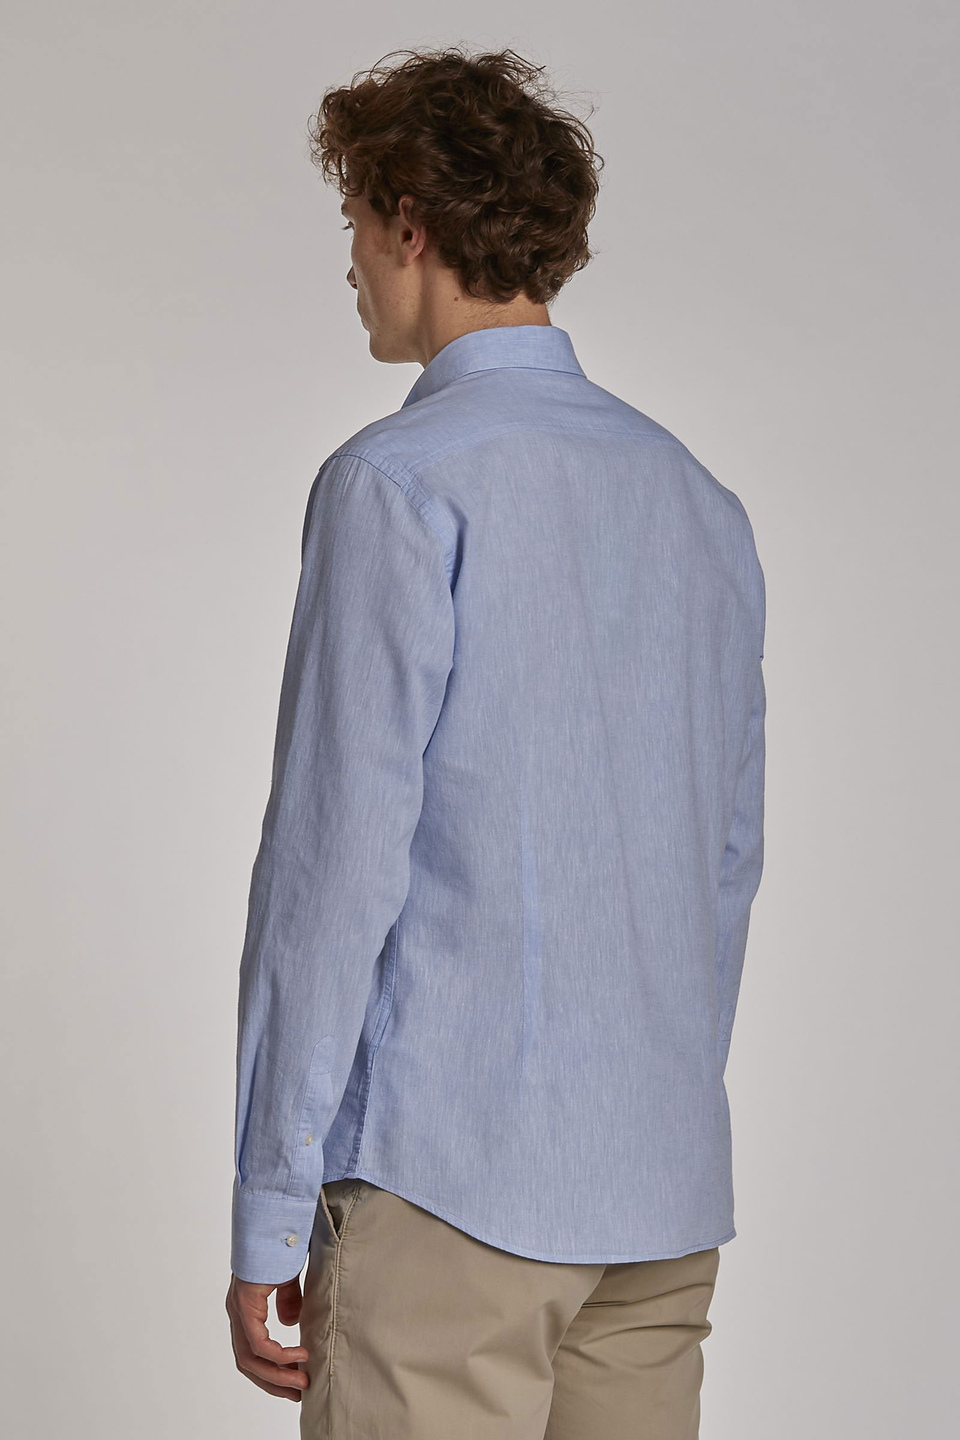 Men's long-sleeved slim-fit shirt - La Martina - Official Online Shop